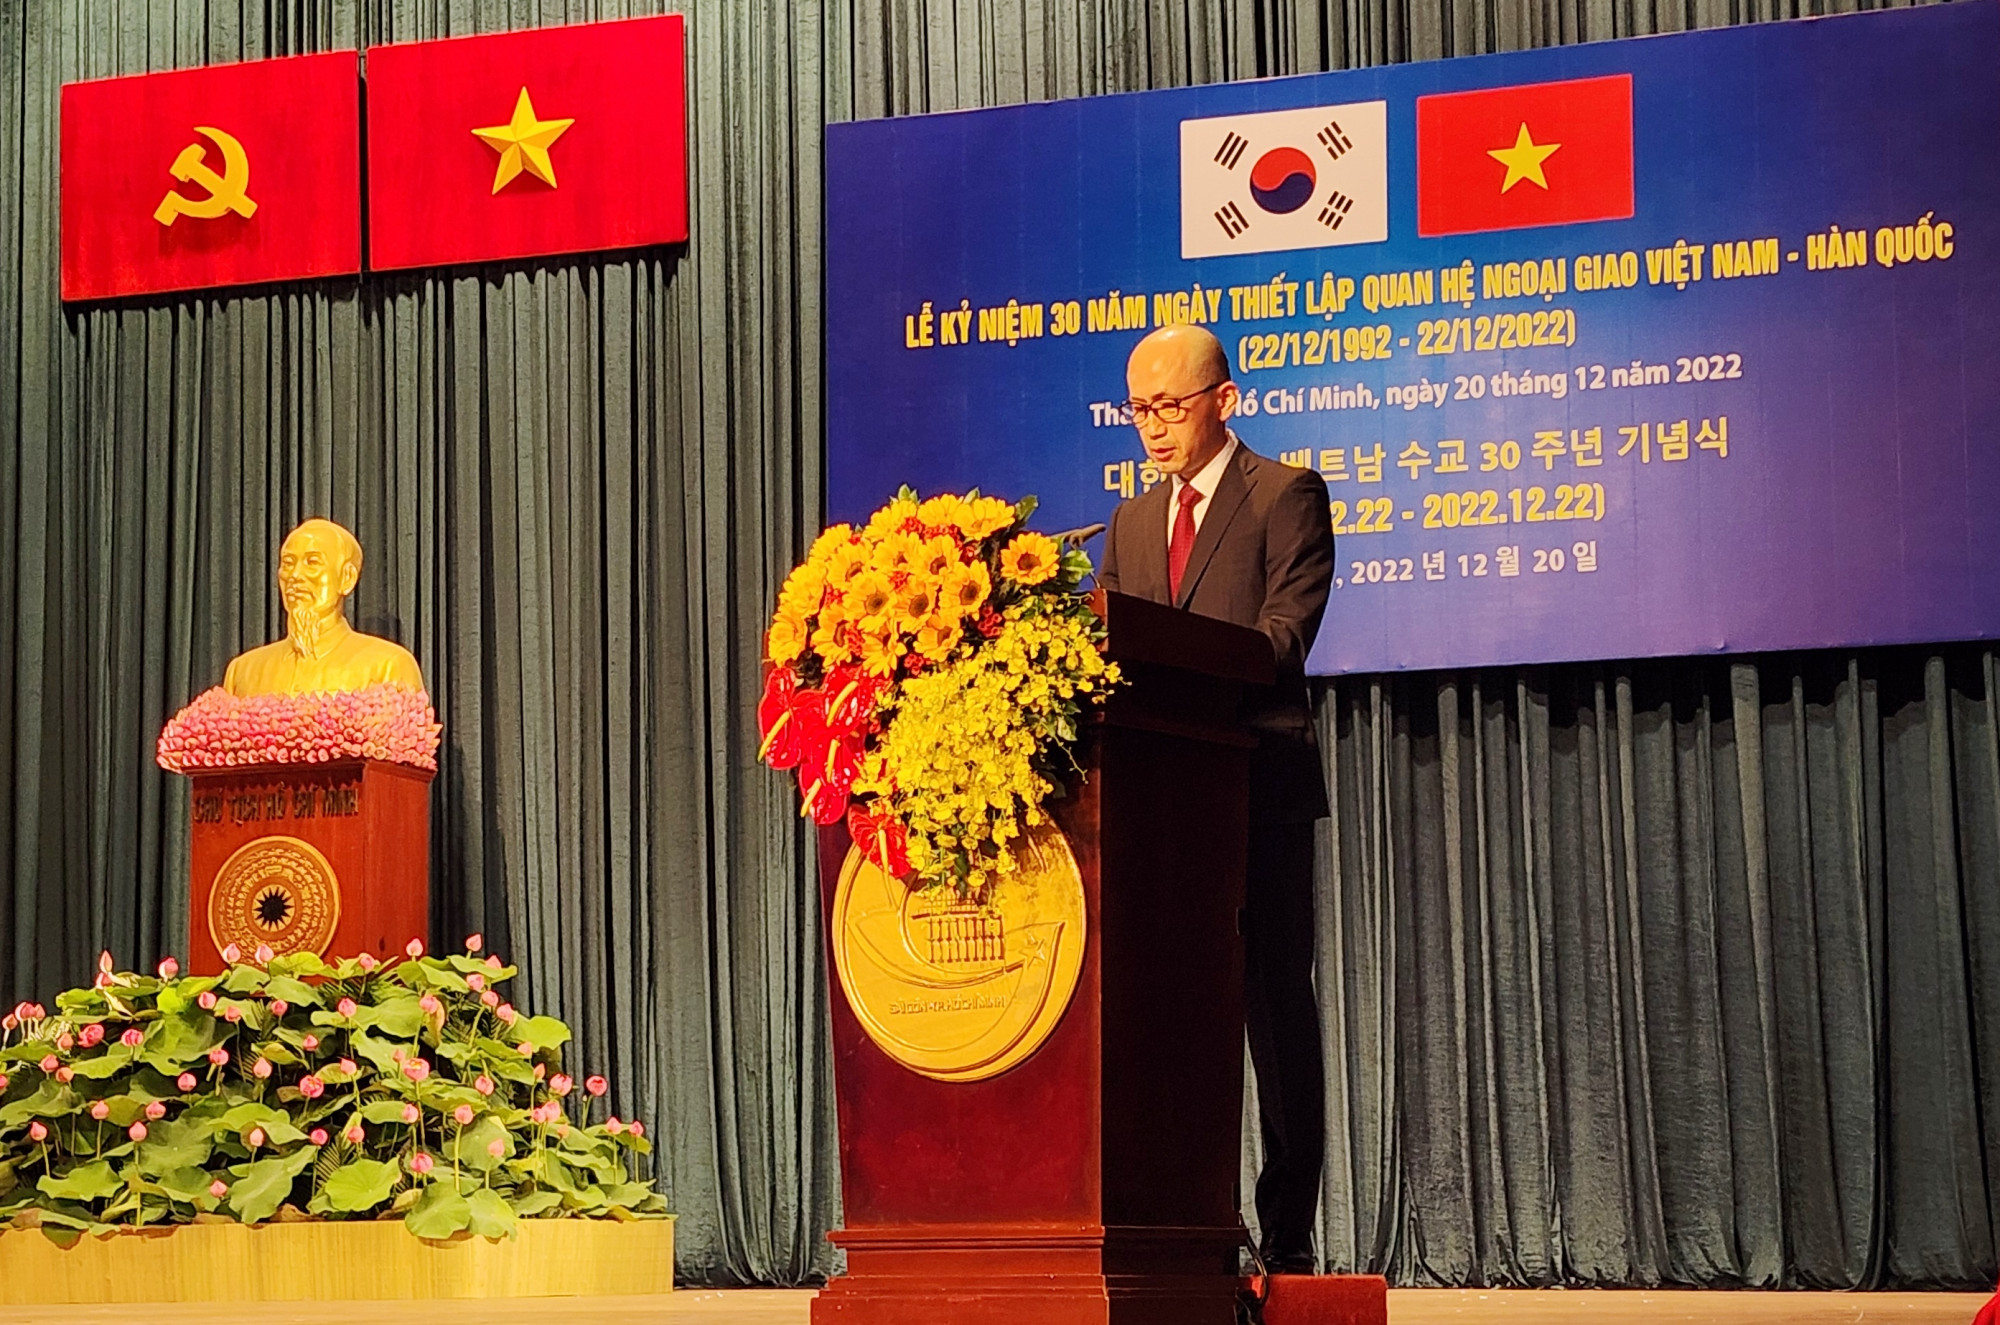 Tổng lãnh sự Hàn quốc tại TP HCM – ông Kang Myongil nhận định mối quan hệ Hàn – Việt ngày nay là không thể tách rời